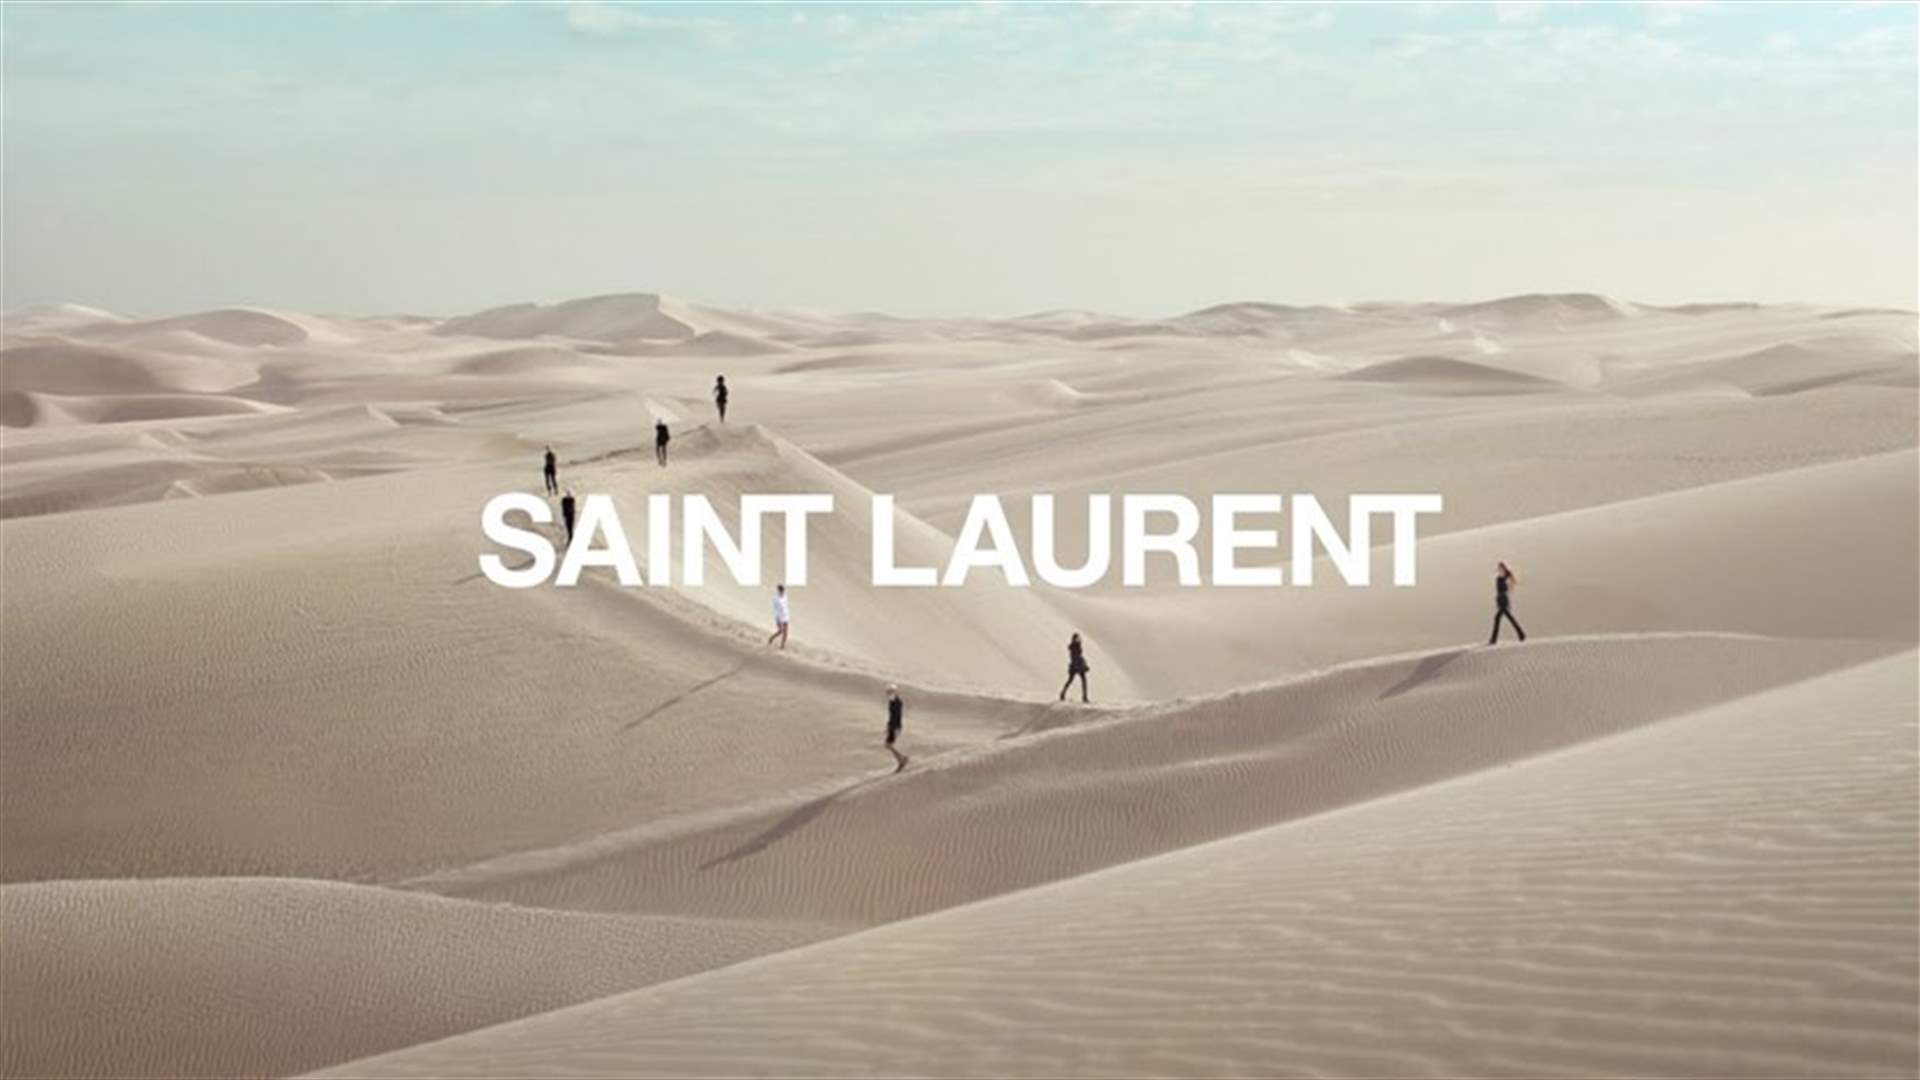 دار سان لوران يعرض مجموعته من أزياء النساء لصيف 2021 في الصحراء (فيديو)